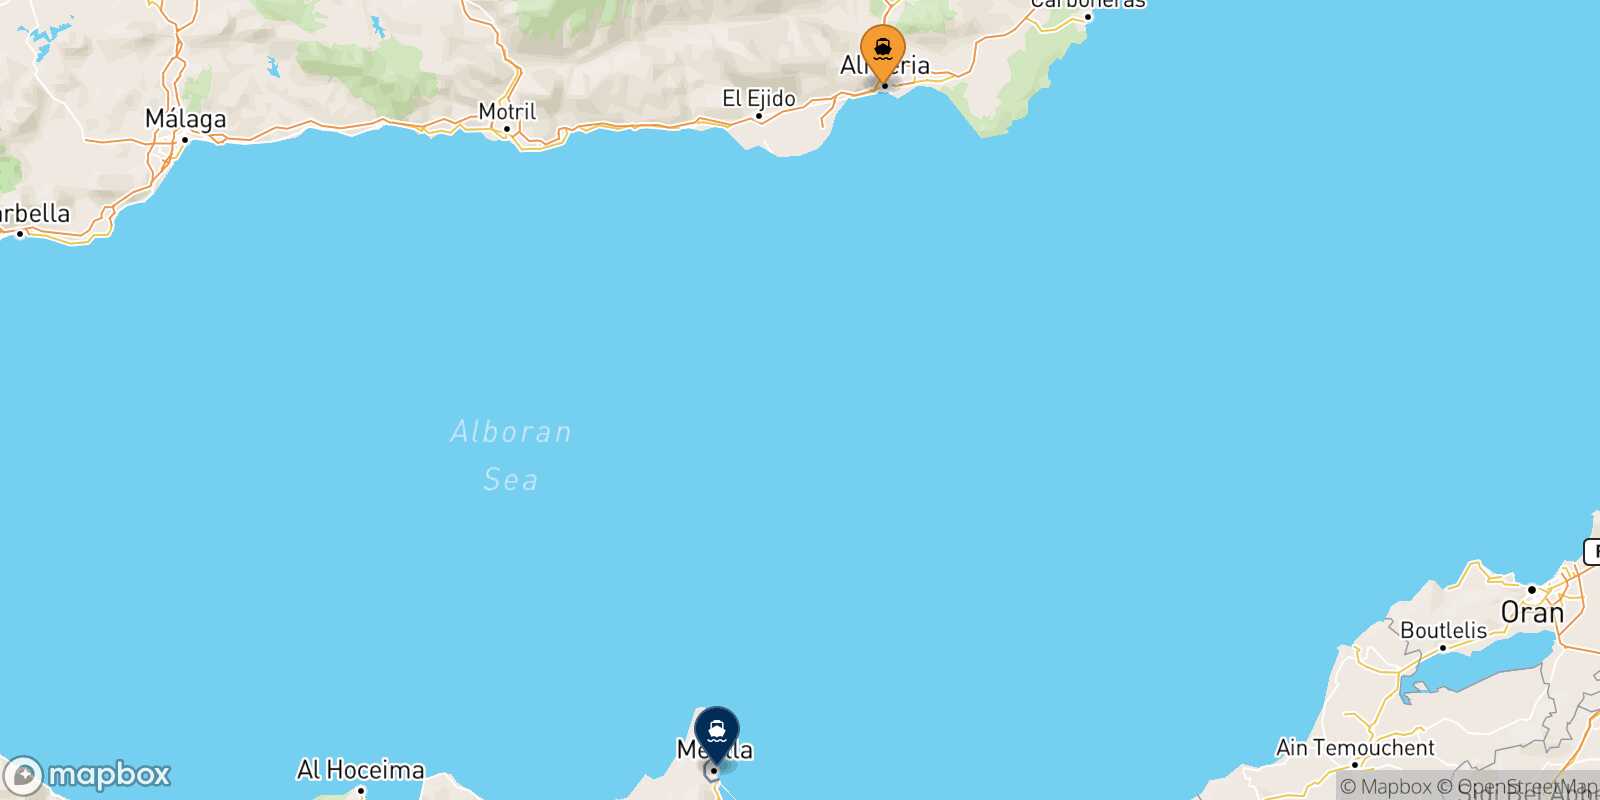 Mapa de la ruta Almería Melilla